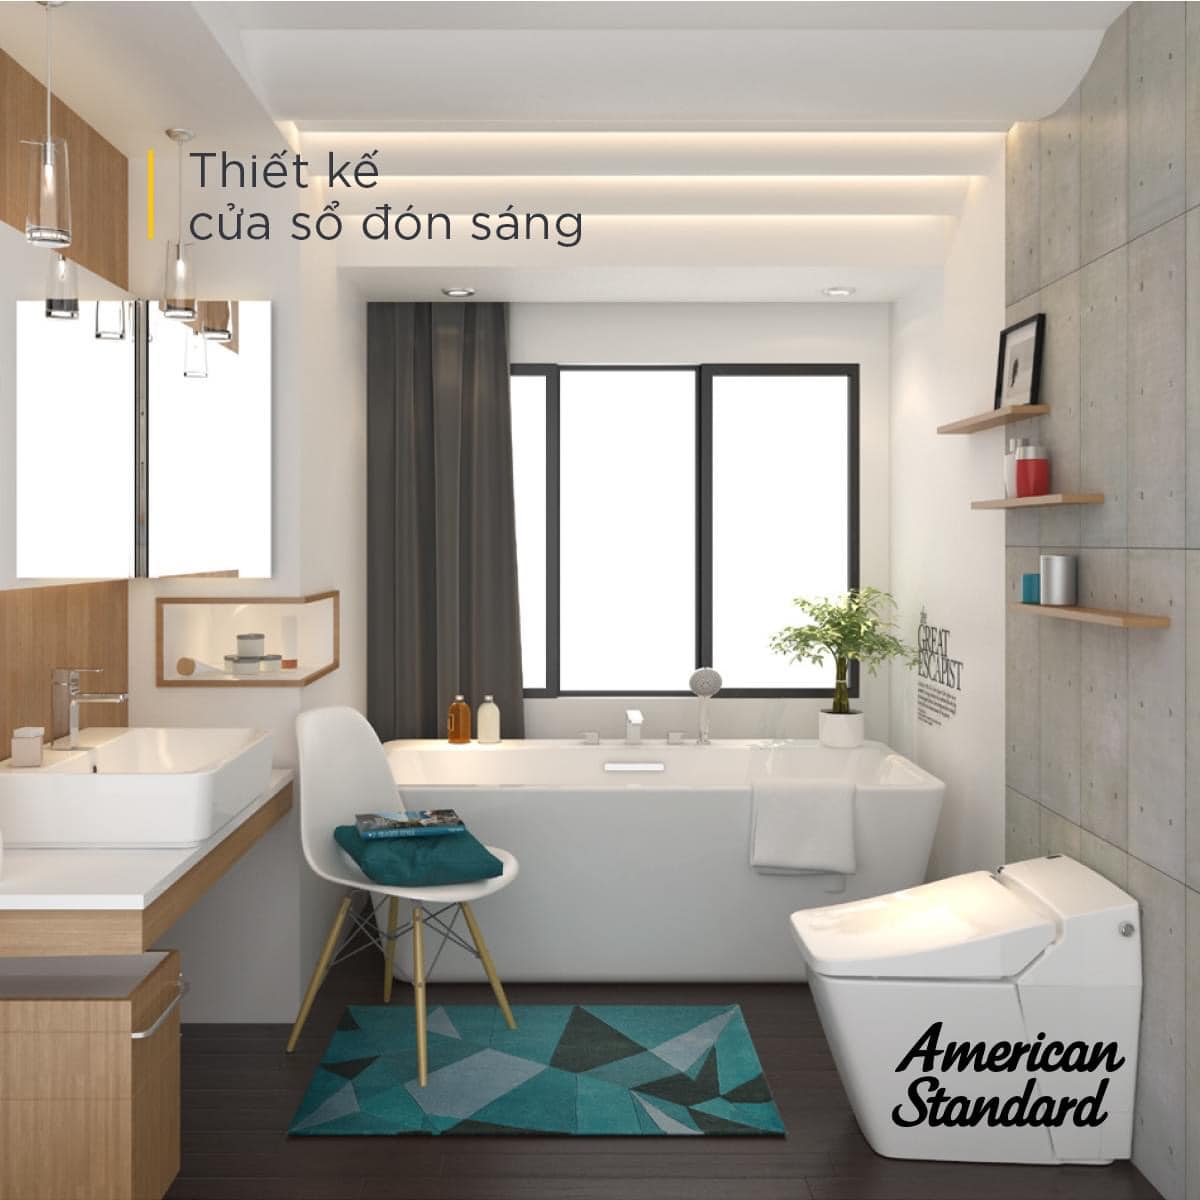 Sử dụng ánh sáng tự nhiên cho phòng tắm là một xu hướng được ưa chuộng trong các thiết kế nội thất hiện đại. Bạn có muốn thấy được sự khác biệt khi sử dụng ánh sáng tự nhiên trong không gian tắm của mình? Hãy xem ngay hình ảnh liên quan đến từ khóa này.